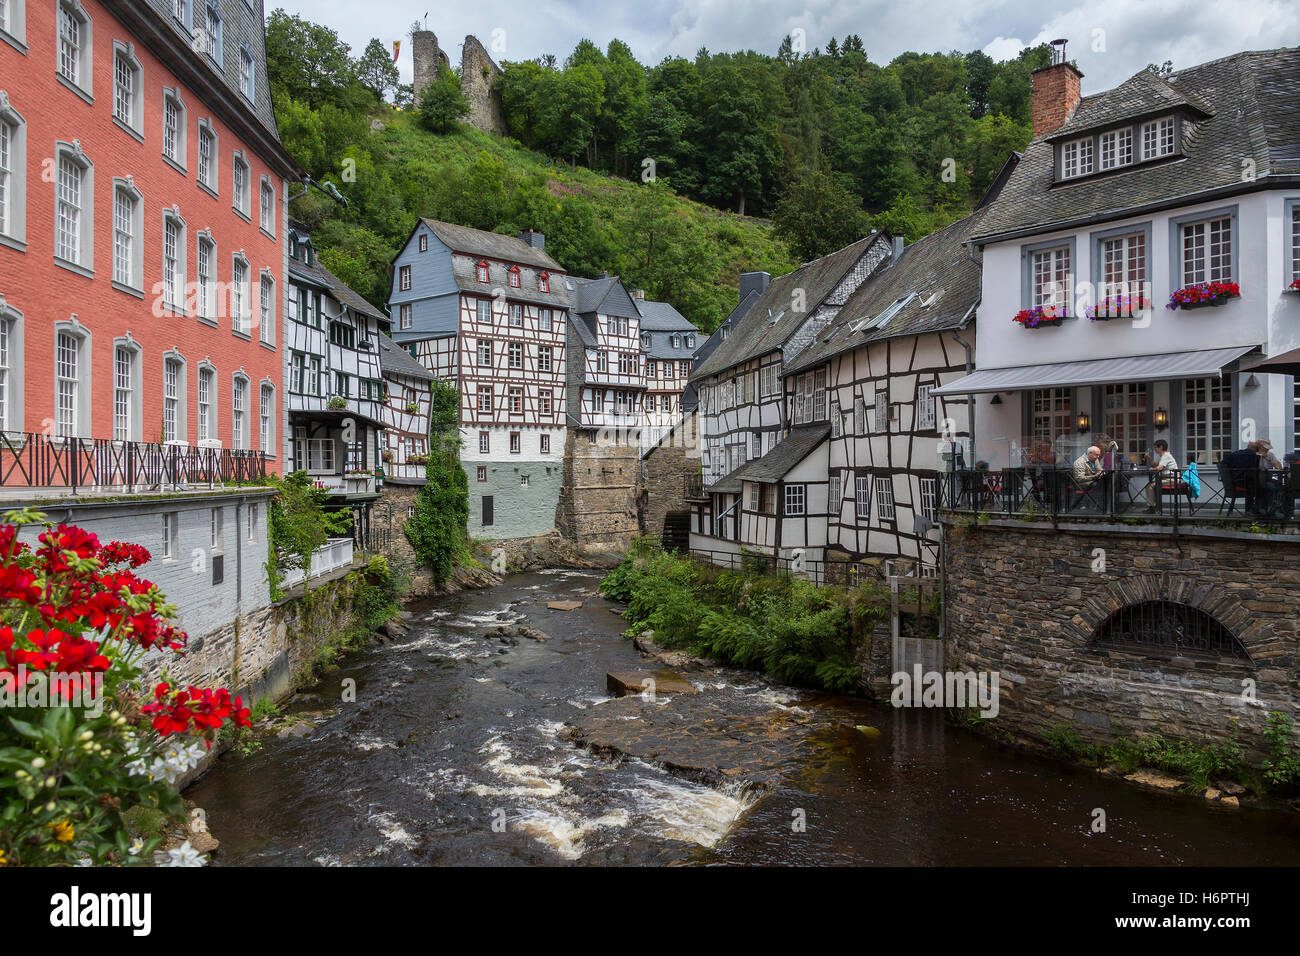 Monschau - una città pittoresca e nelle colline del nord parco naturale Eifel nella stretta valle del fiume Rur in Germania. Foto Stock